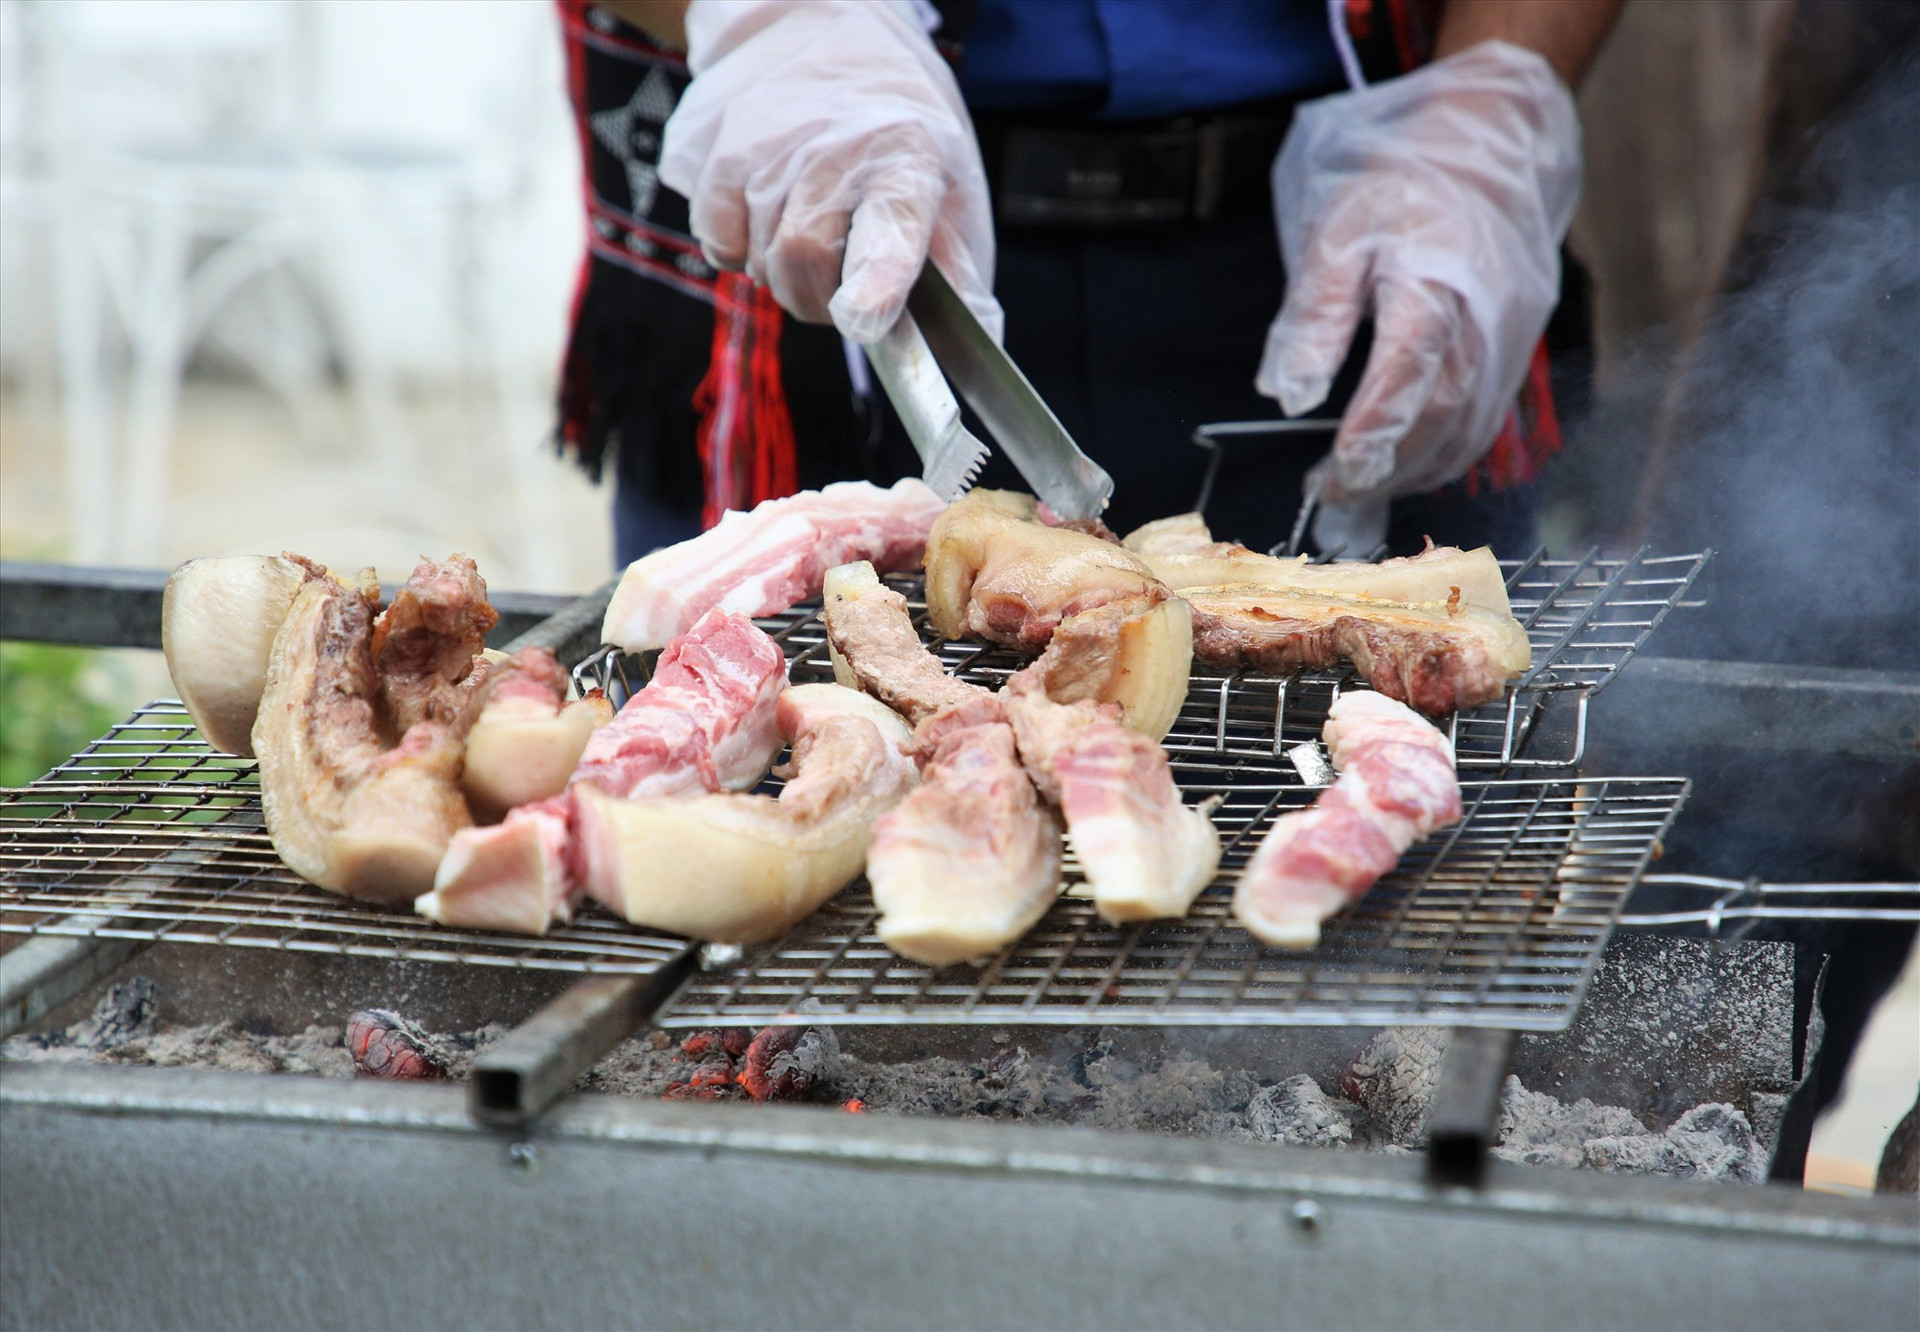 Thịt heo đen Nam Giang được đánh giá có chất lượng cao, kỳ vọng sẽ tạo nên thương hiệu đặc trưng giúp cải thiện sinh kế, nâng cao đời sống cho đồng bào địa phương. Ảnh: A.N